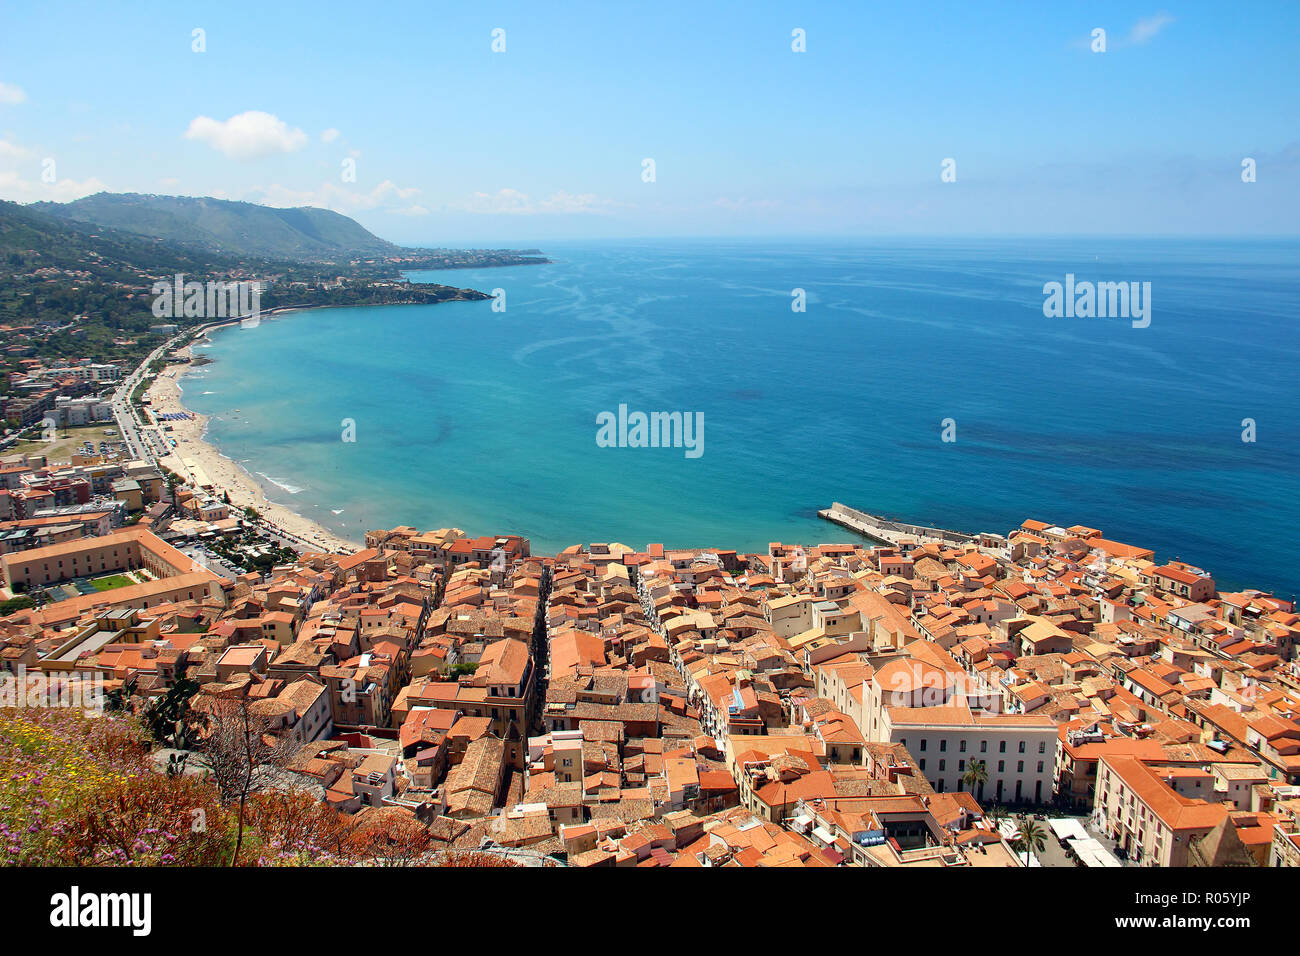 Vue aérienne de la vieille ville de Cefalù avec belle plage et mer Méditerranée, Sicile, Italie Banque D'Images